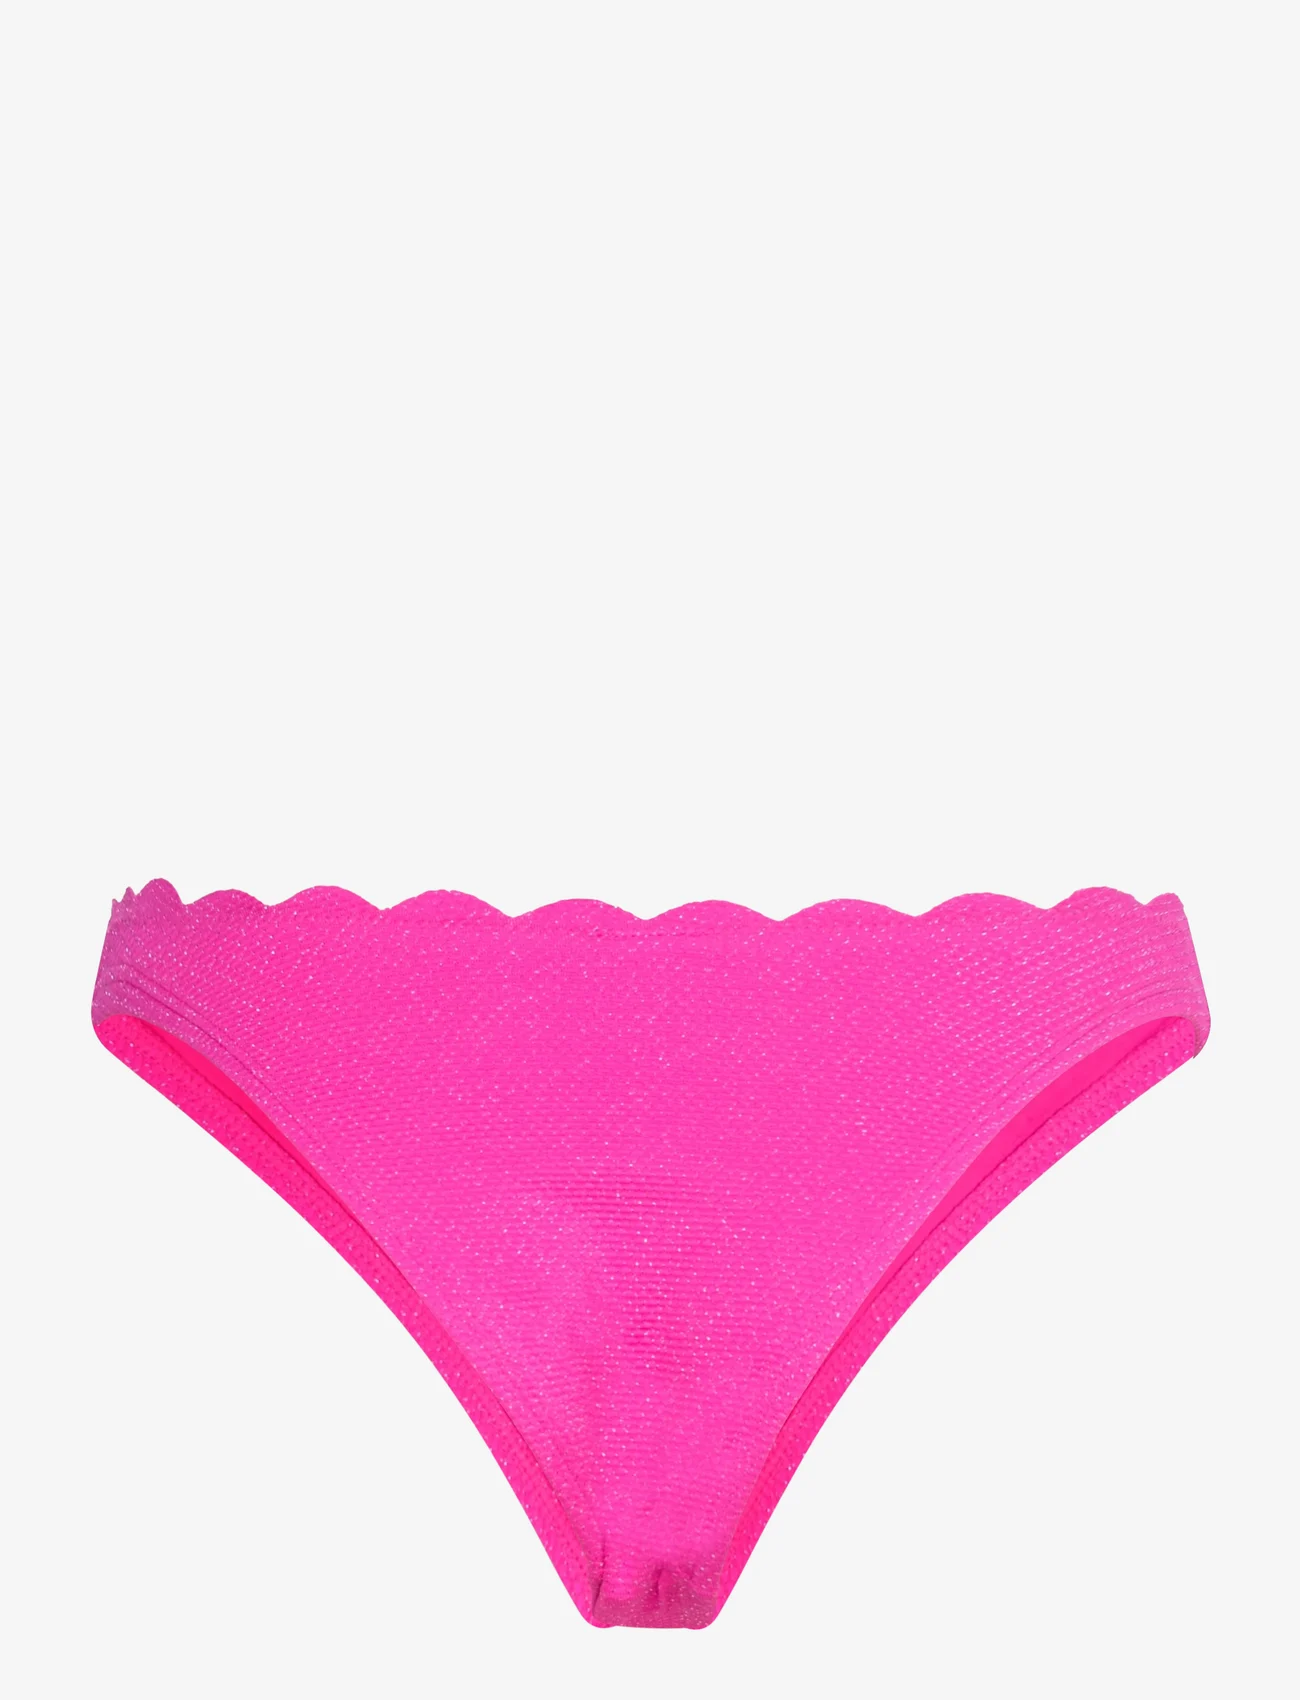 Hunkemöller - Scallop lurex high leg r - bikinibriefs - hot pink - 1